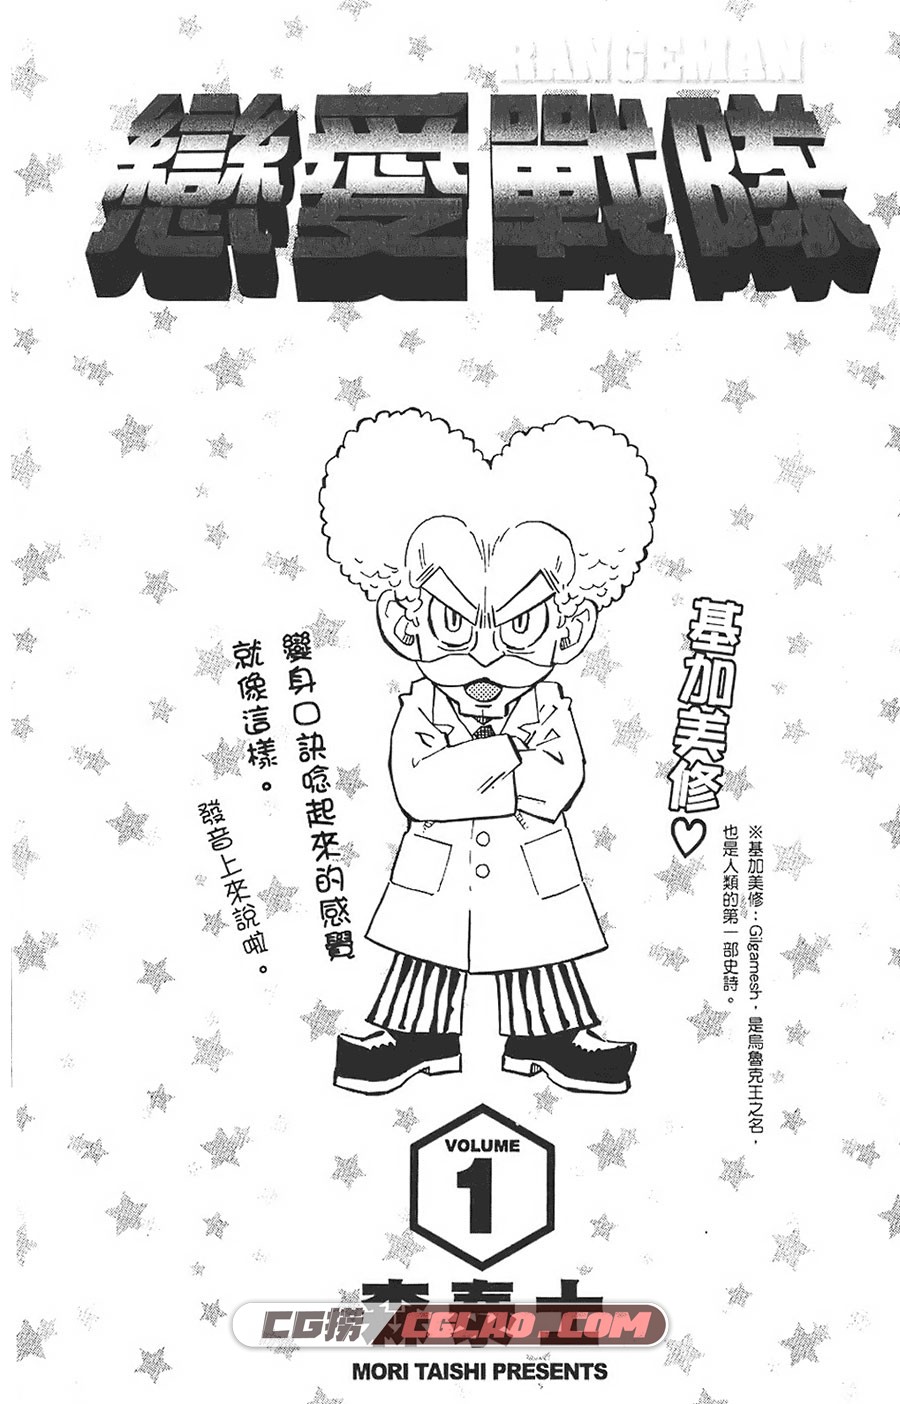 恋爱战队 森泰士 1-6卷 漫画完结全集下载 百度云下载,Rangeman001.jpg